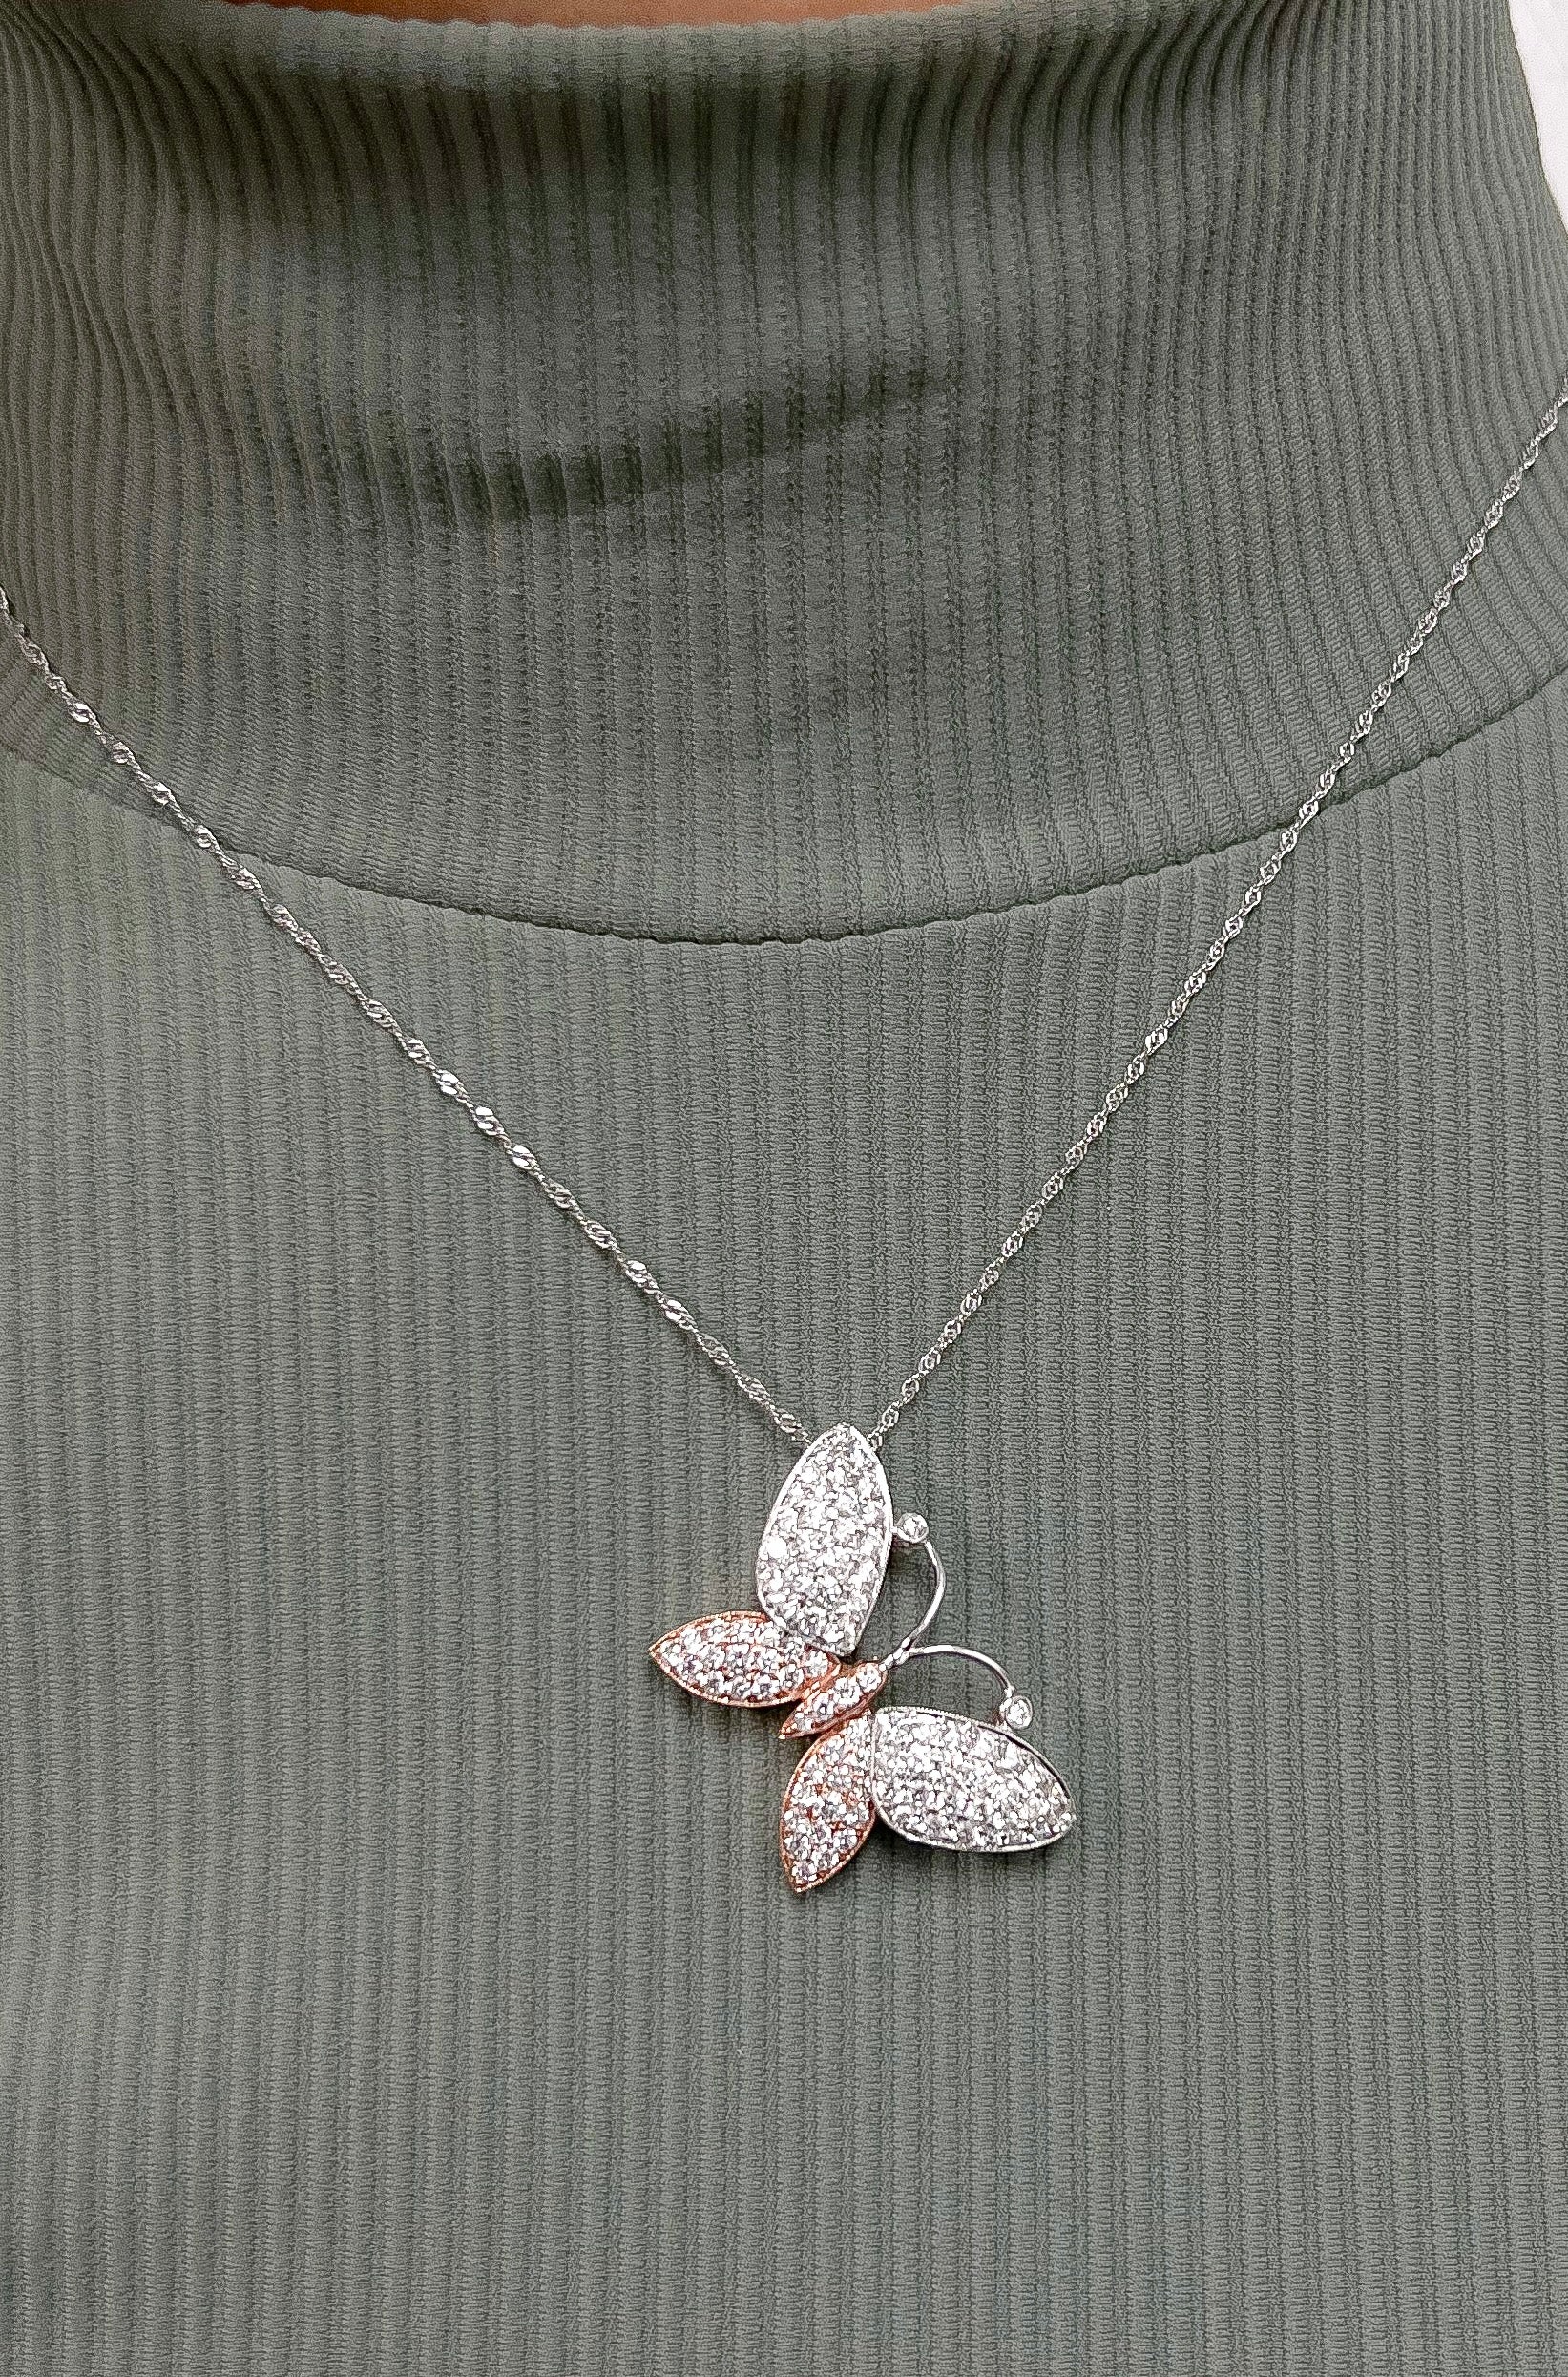 Crystal Butterfly Pendant Necklace – Vivian Grace